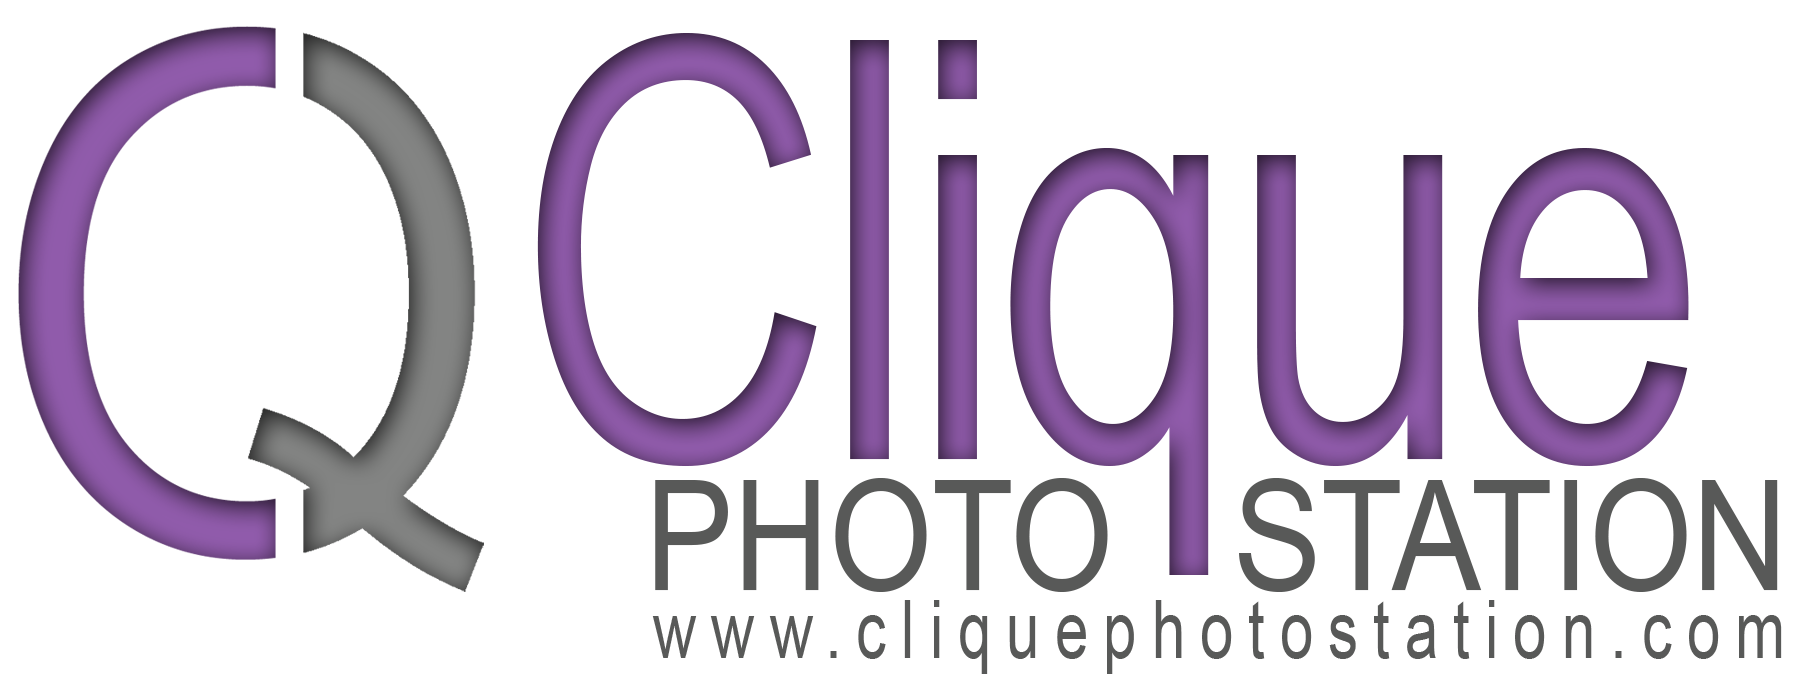 Clique Photo Station